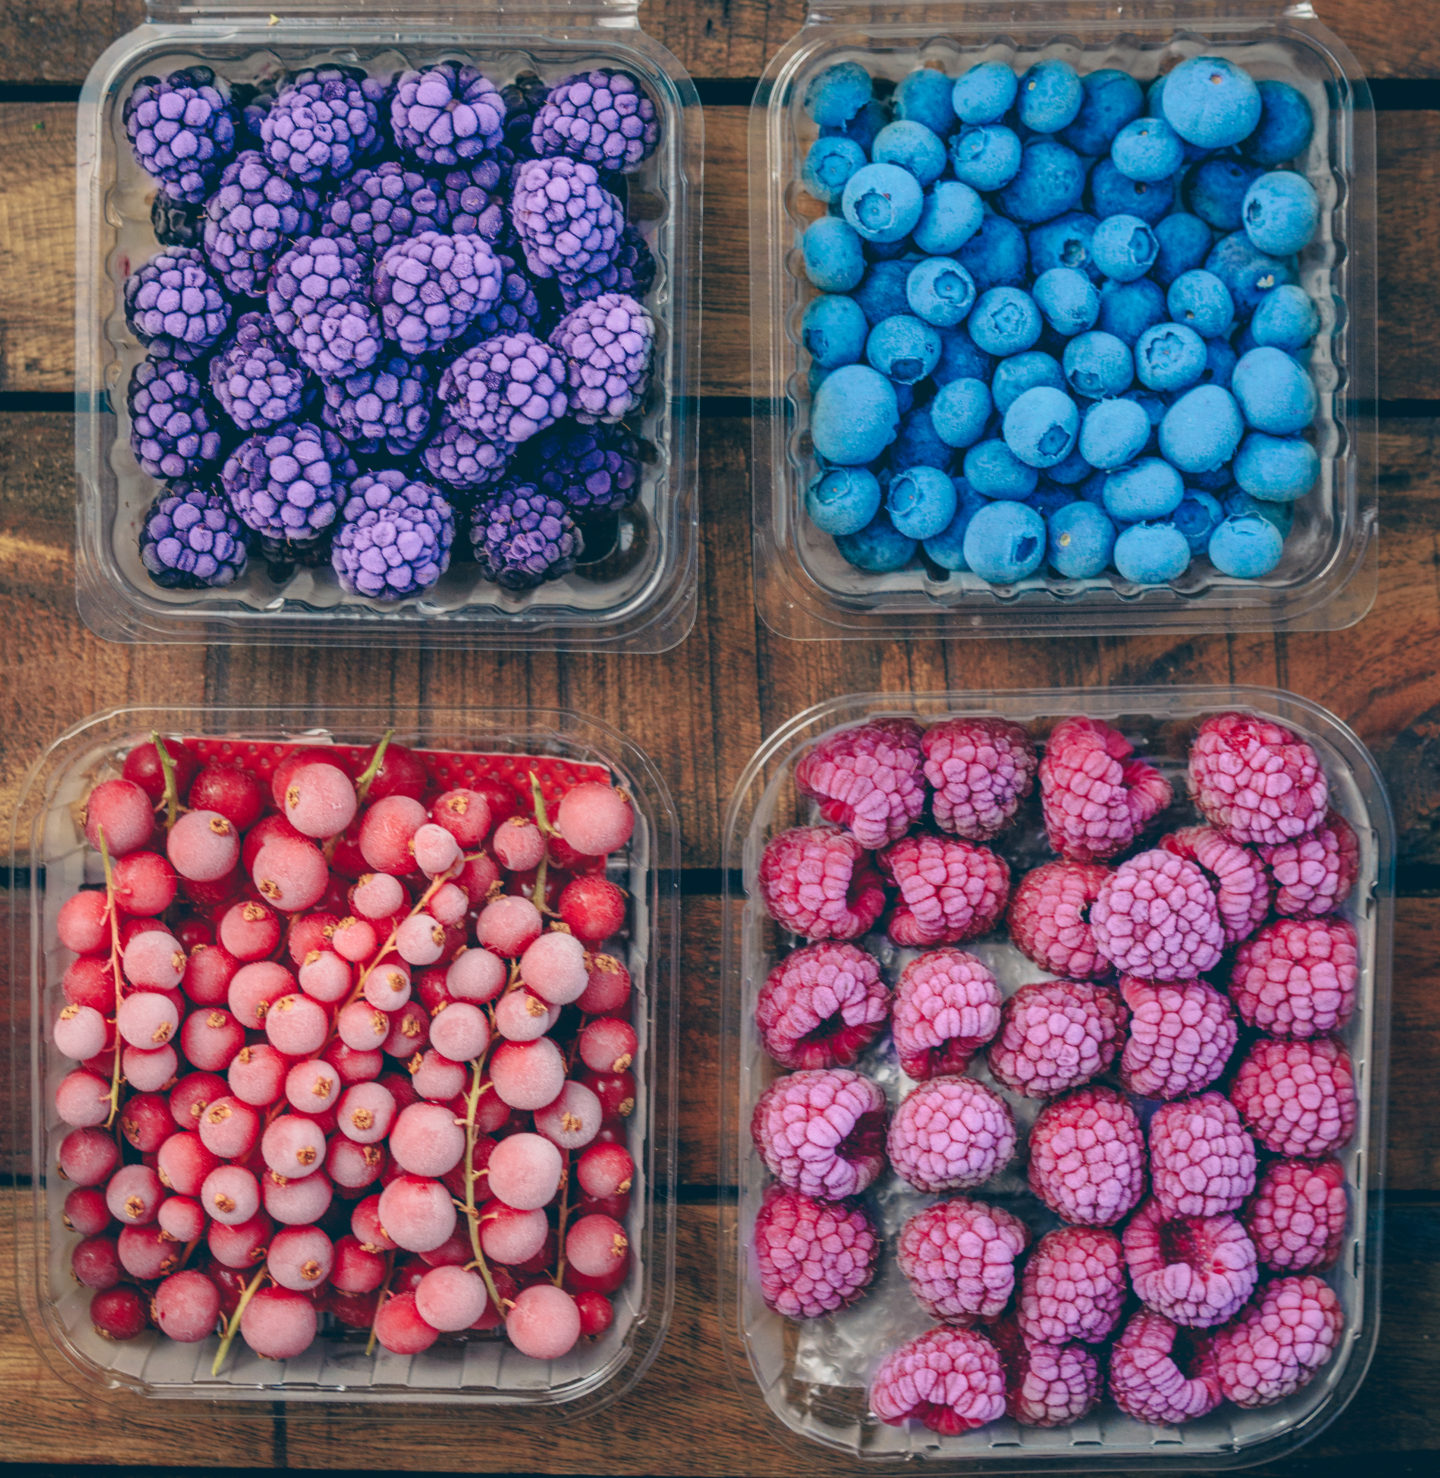 How To Achieve The Frosty Berries Look / Frozen Berries Tutorial ...